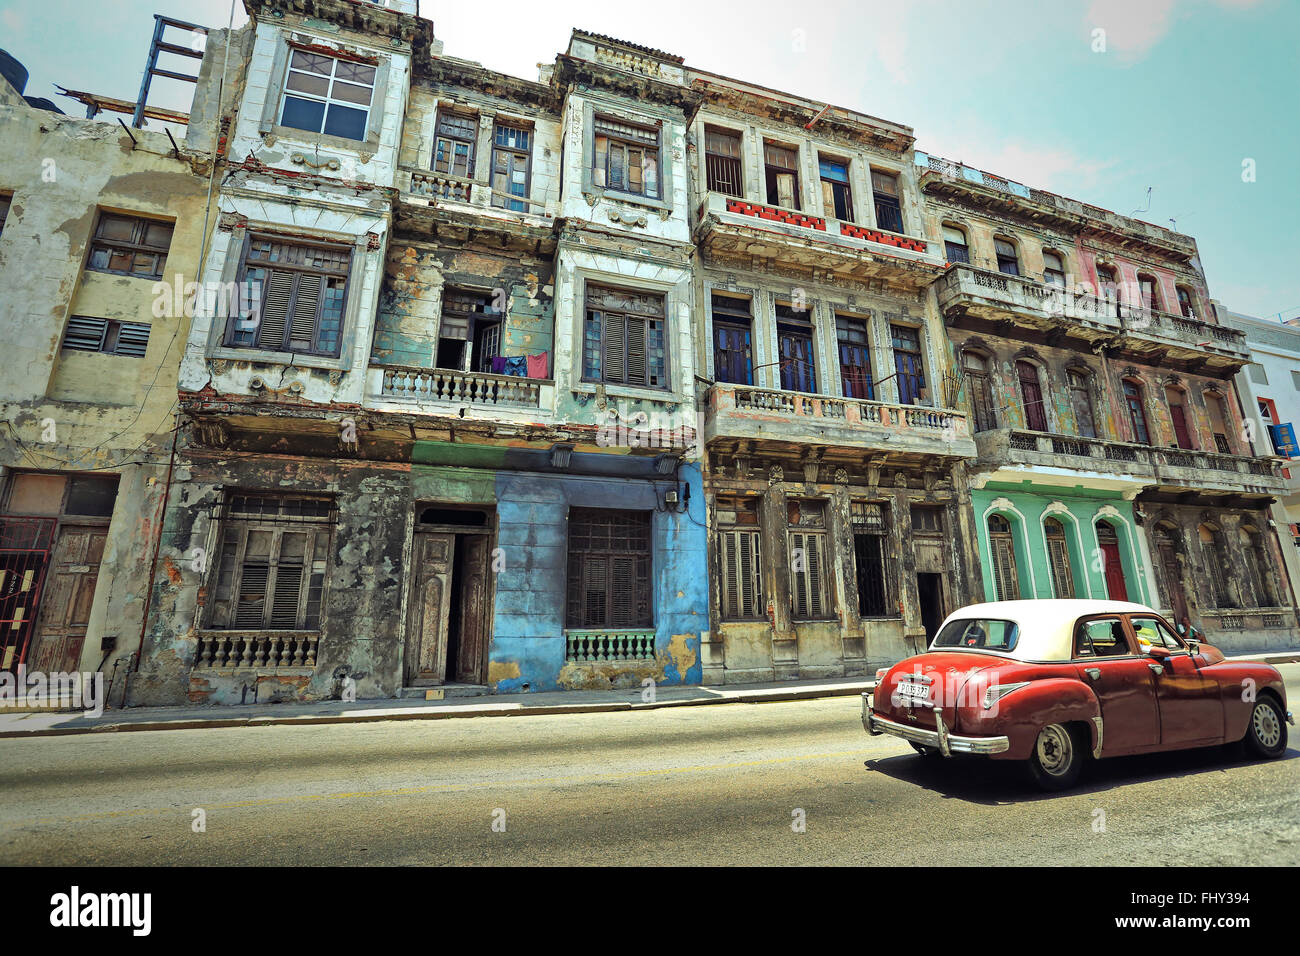 Vintage voiture américaine sur l'historique de l'vieux bâtiments coloniaux de la vieille Havane. Photo style vintage Banque D'Images